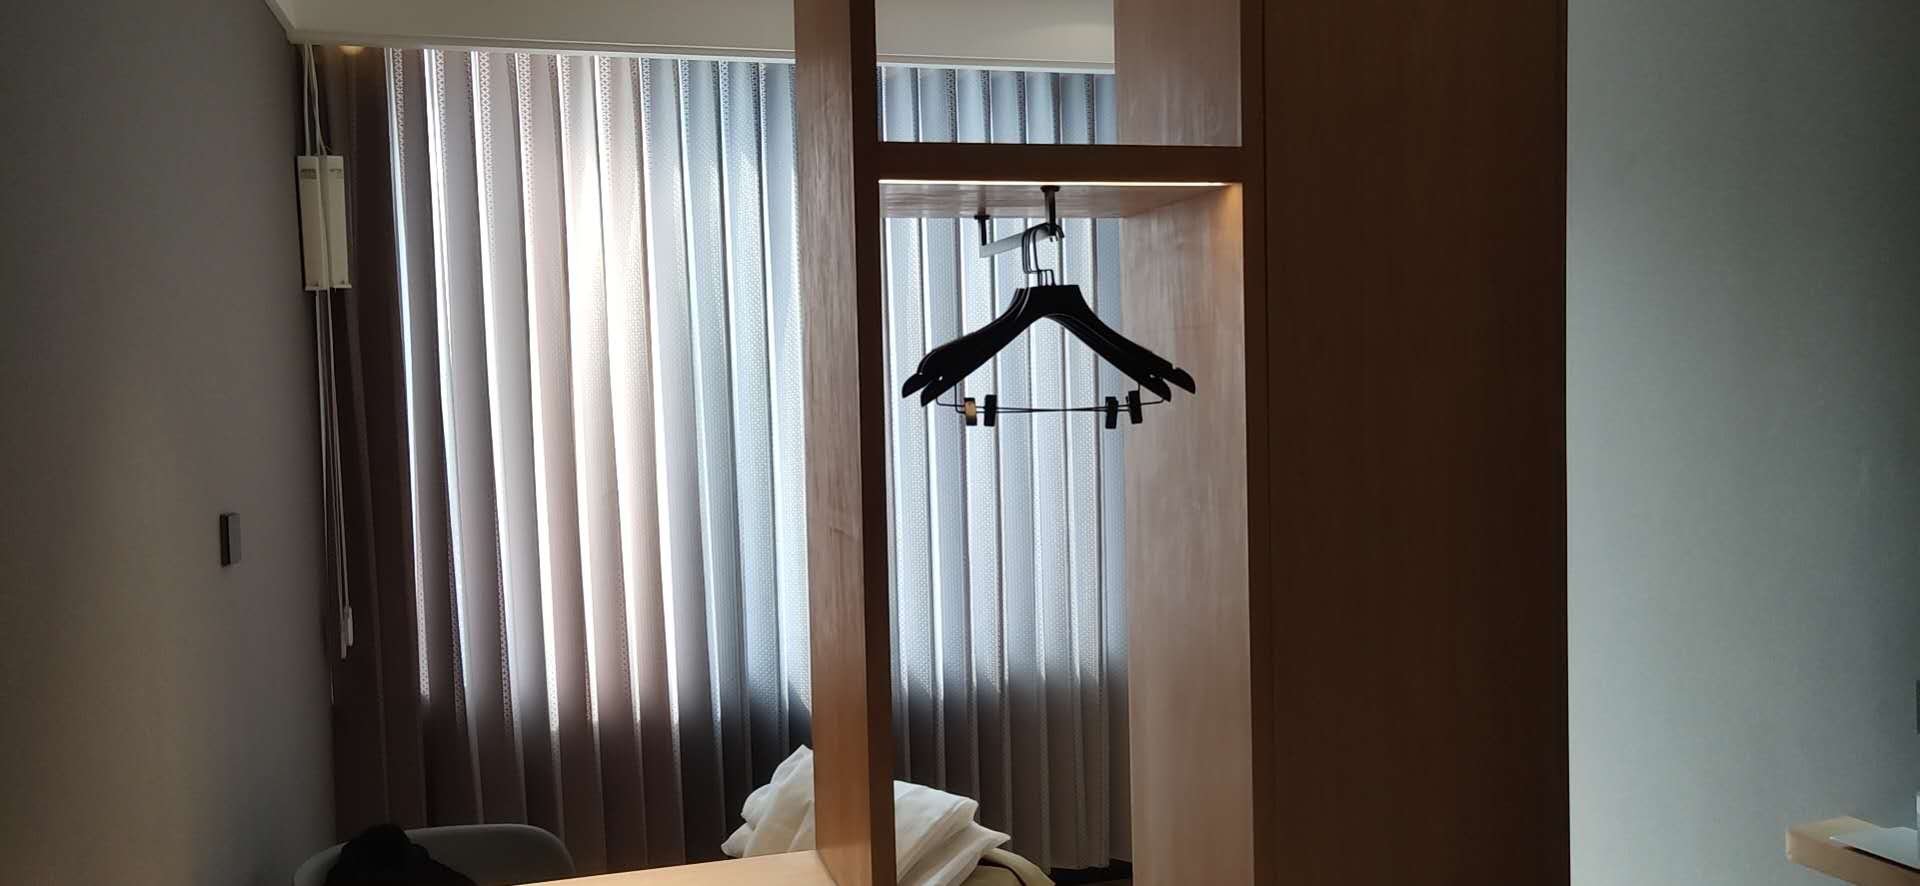 北京色彩酒店梦幻电控自动智能窗帘安装